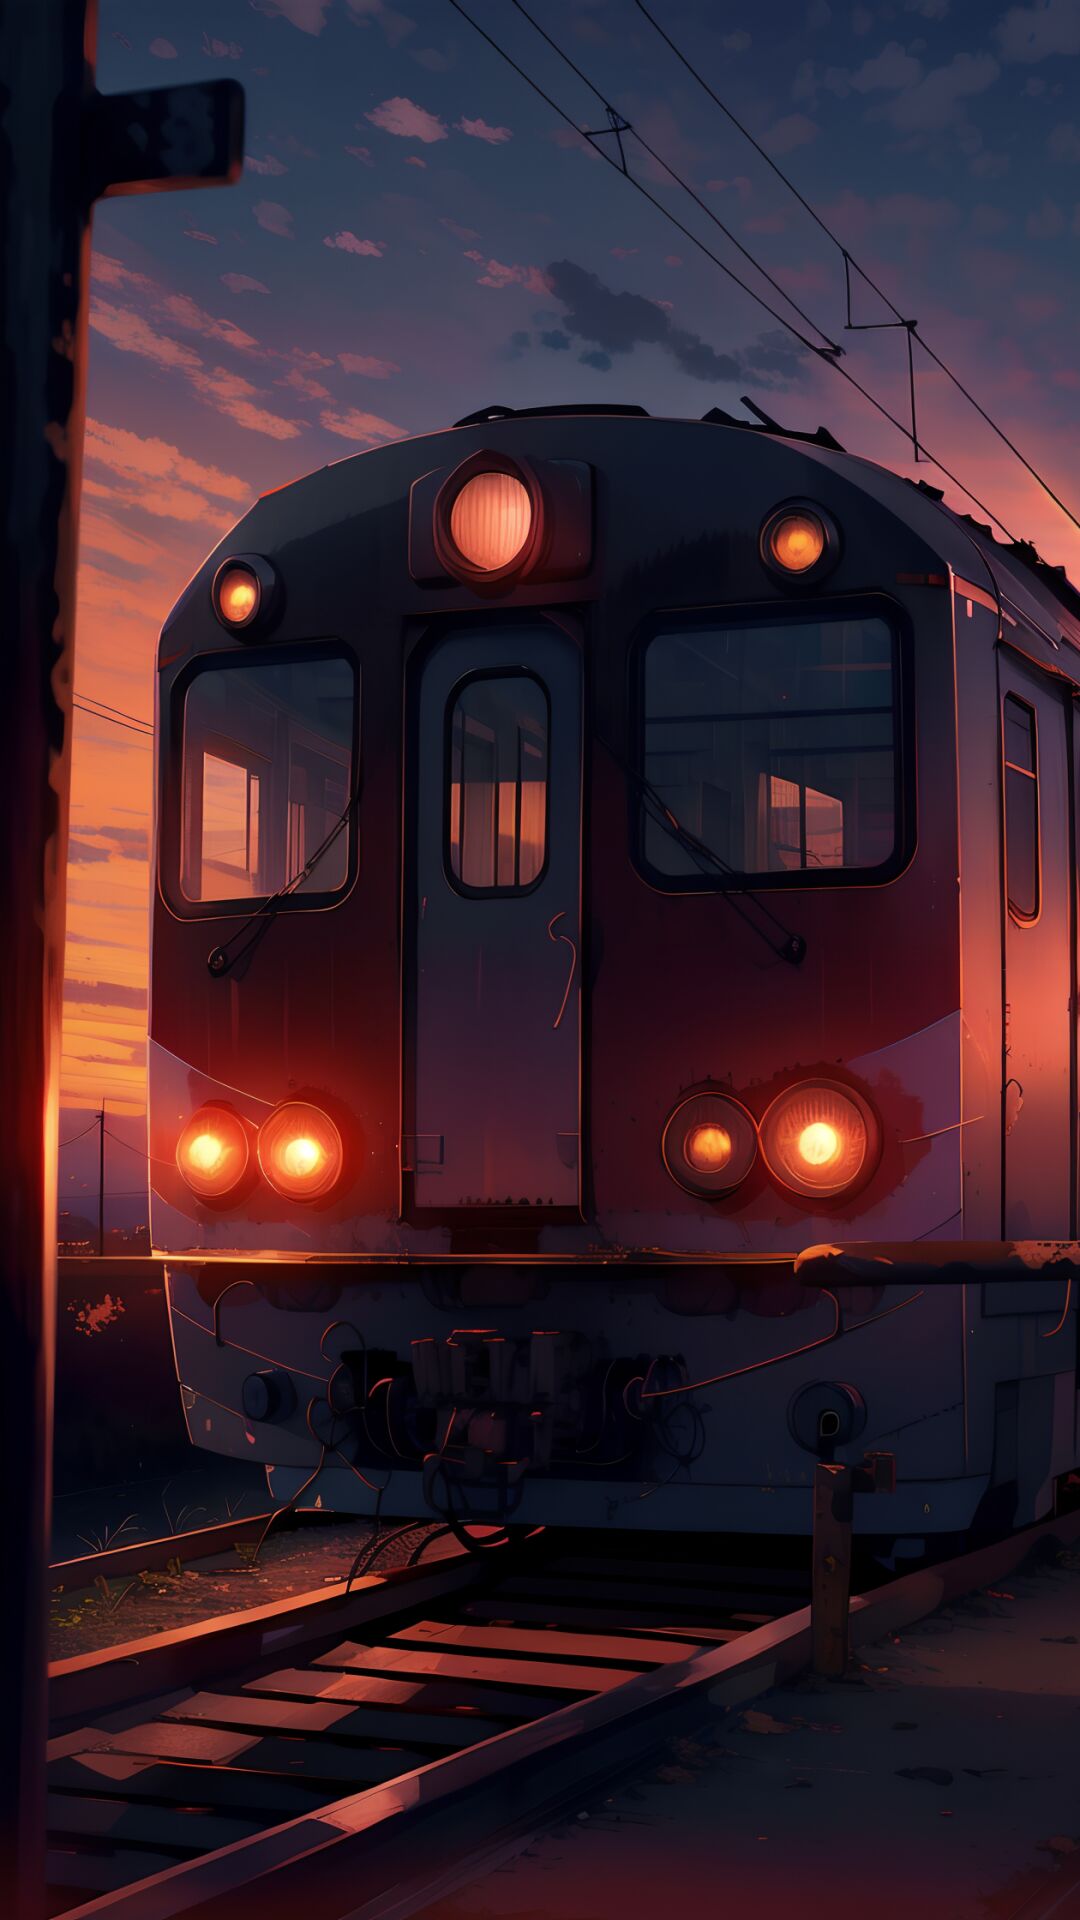 夕阳下的火车头唯美动漫手机壁纸图片